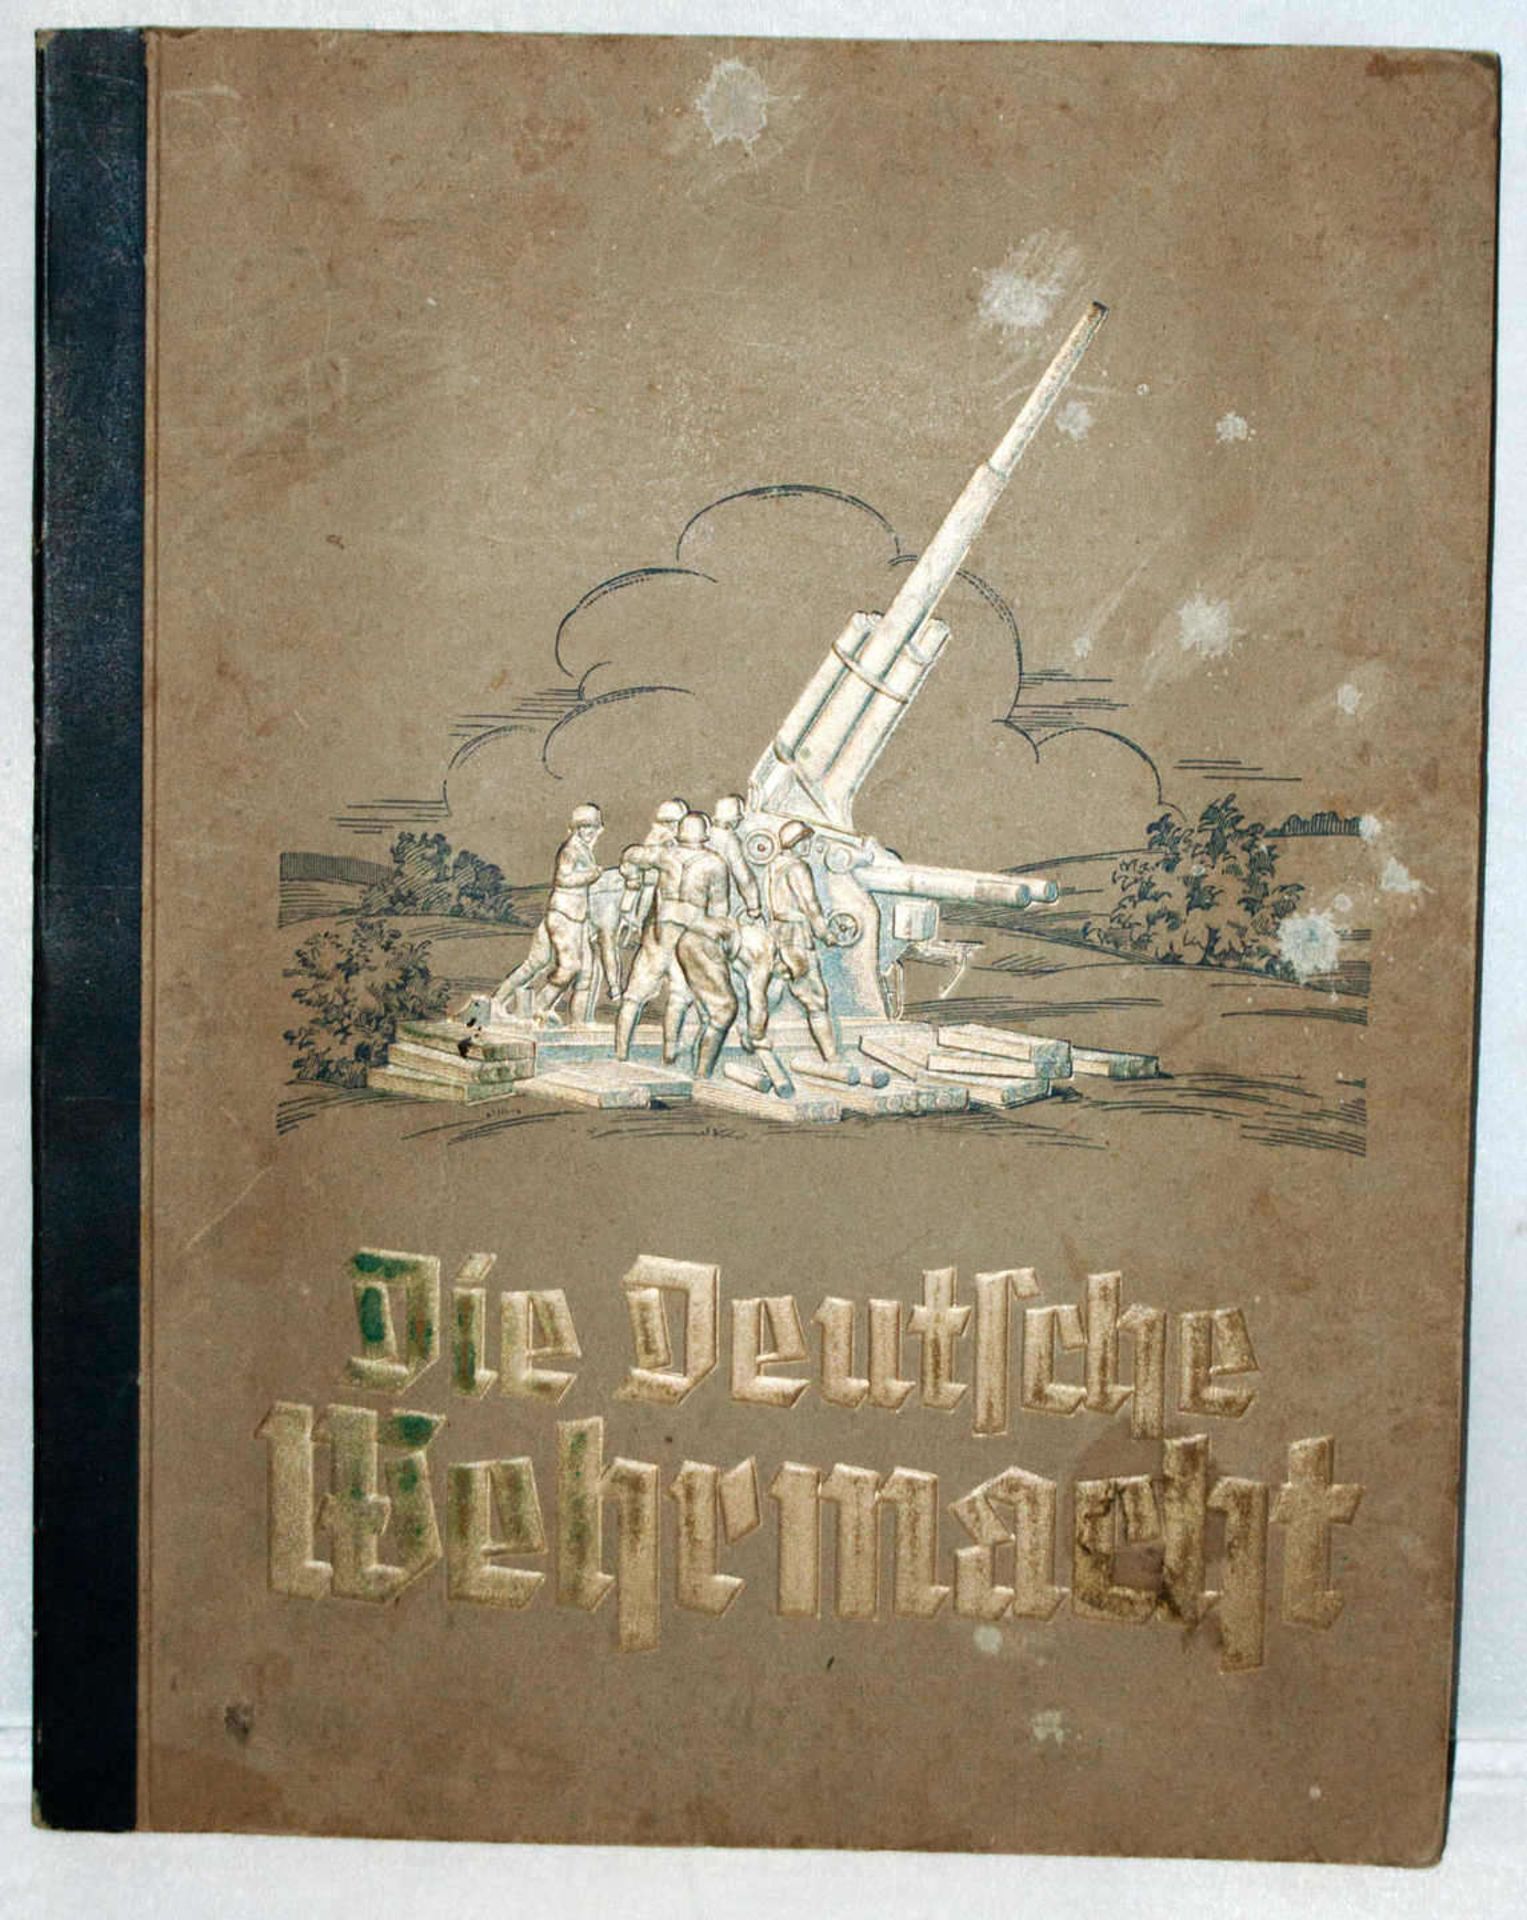 Sammelbilderalbum "Die Deutsche Wehrmacht", komplett mit allen BildernCollective album "The German